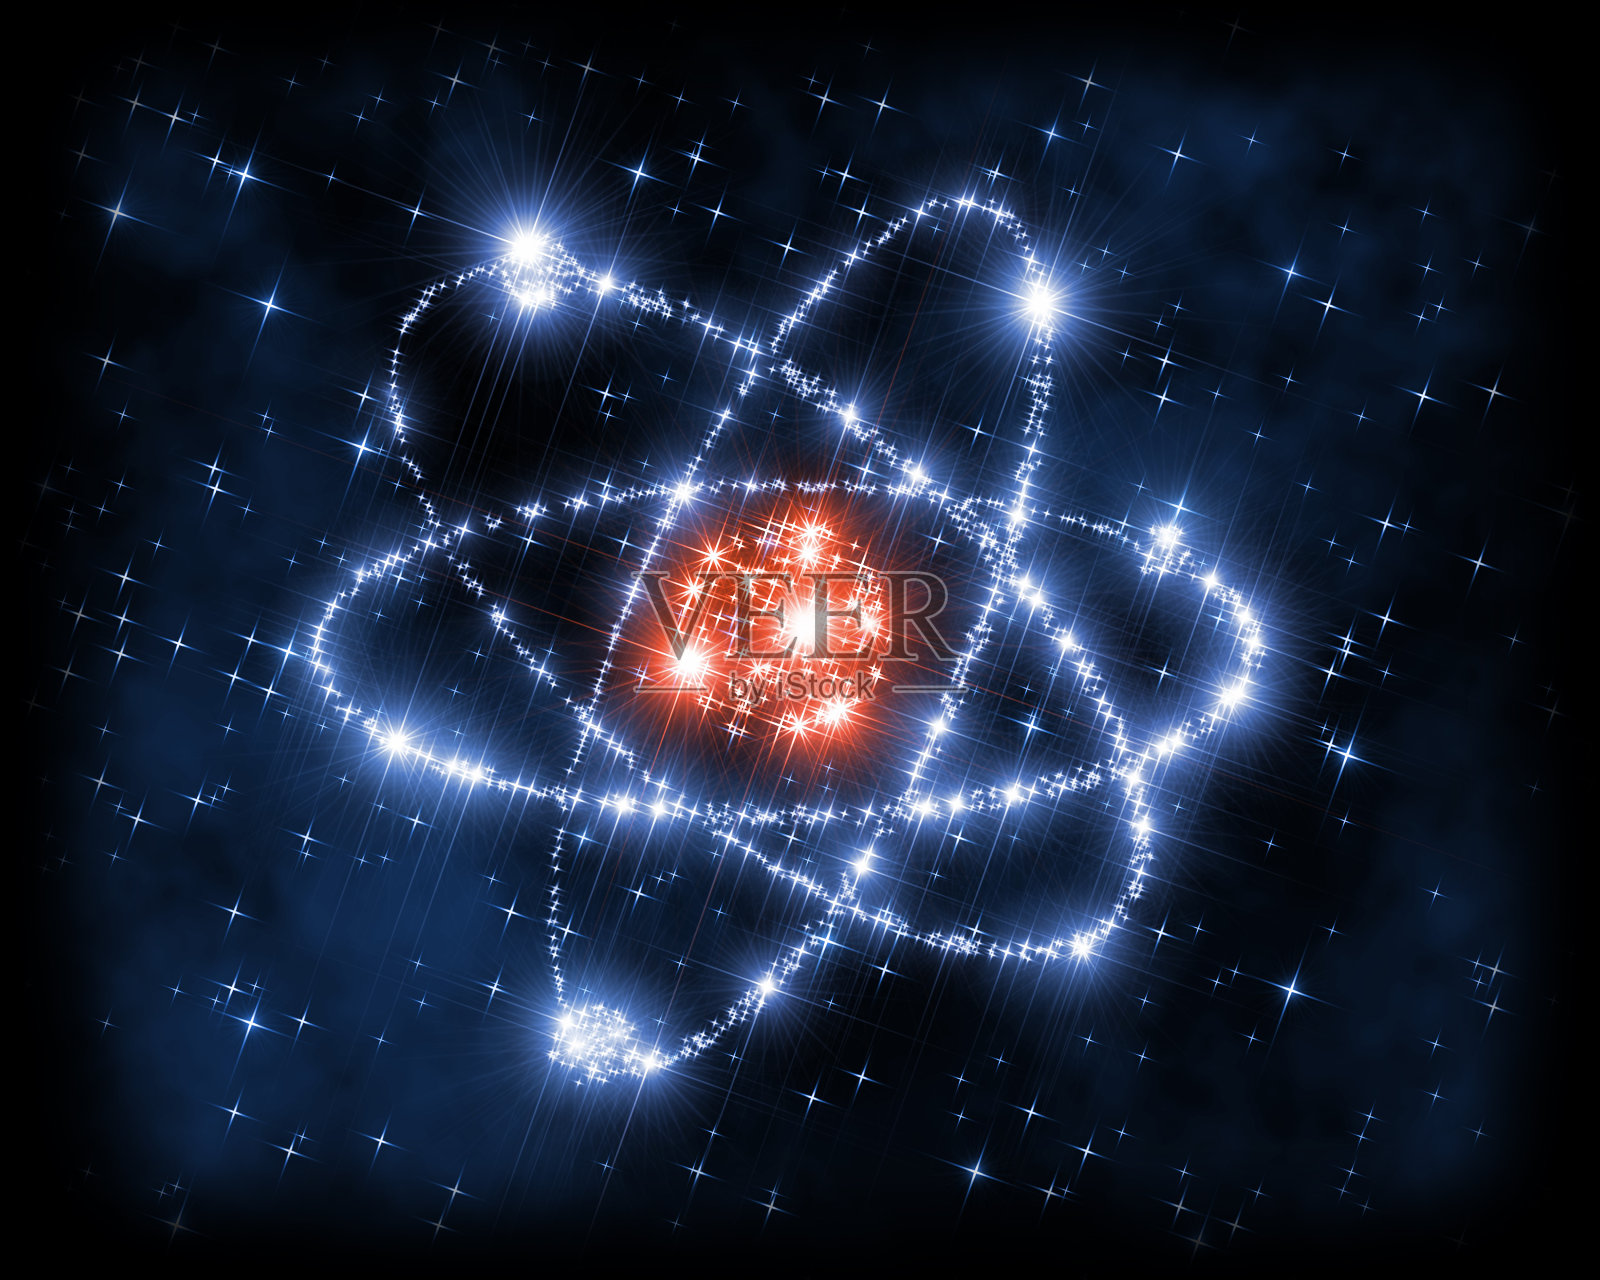 抽象的背景插图，代表了以原子核为中心，电子旋转的原子模型符号，象征着技术、纳米技术、物理学、微观世界和现代科学。插画图片素材